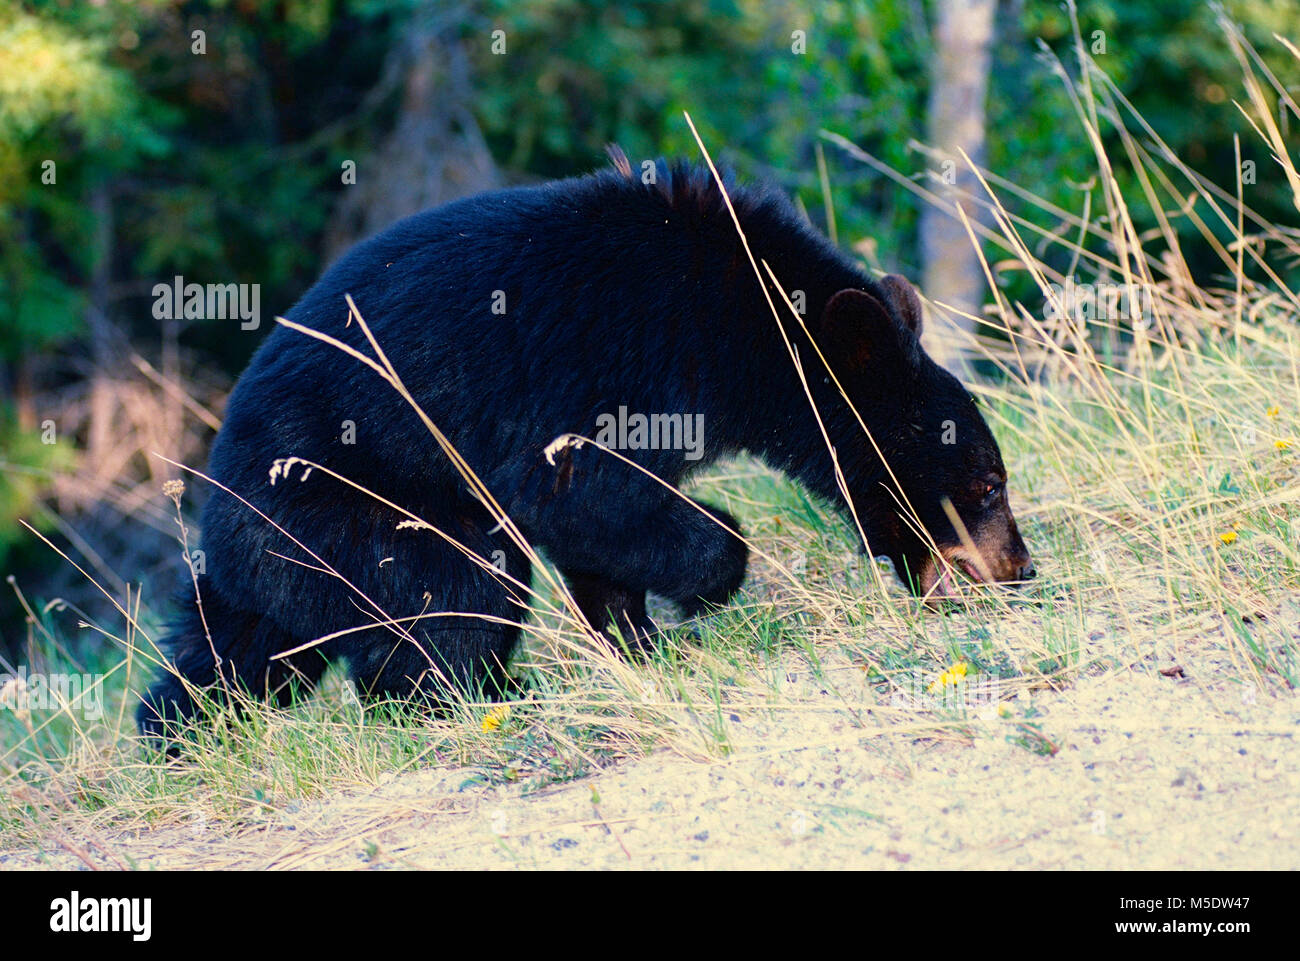 Oso Negro Ursus americanus, Ursidae, Oso, navegación, mamífero, animal, el Parque Nacional de Jasper, Alberta, Canadá Foto de stock